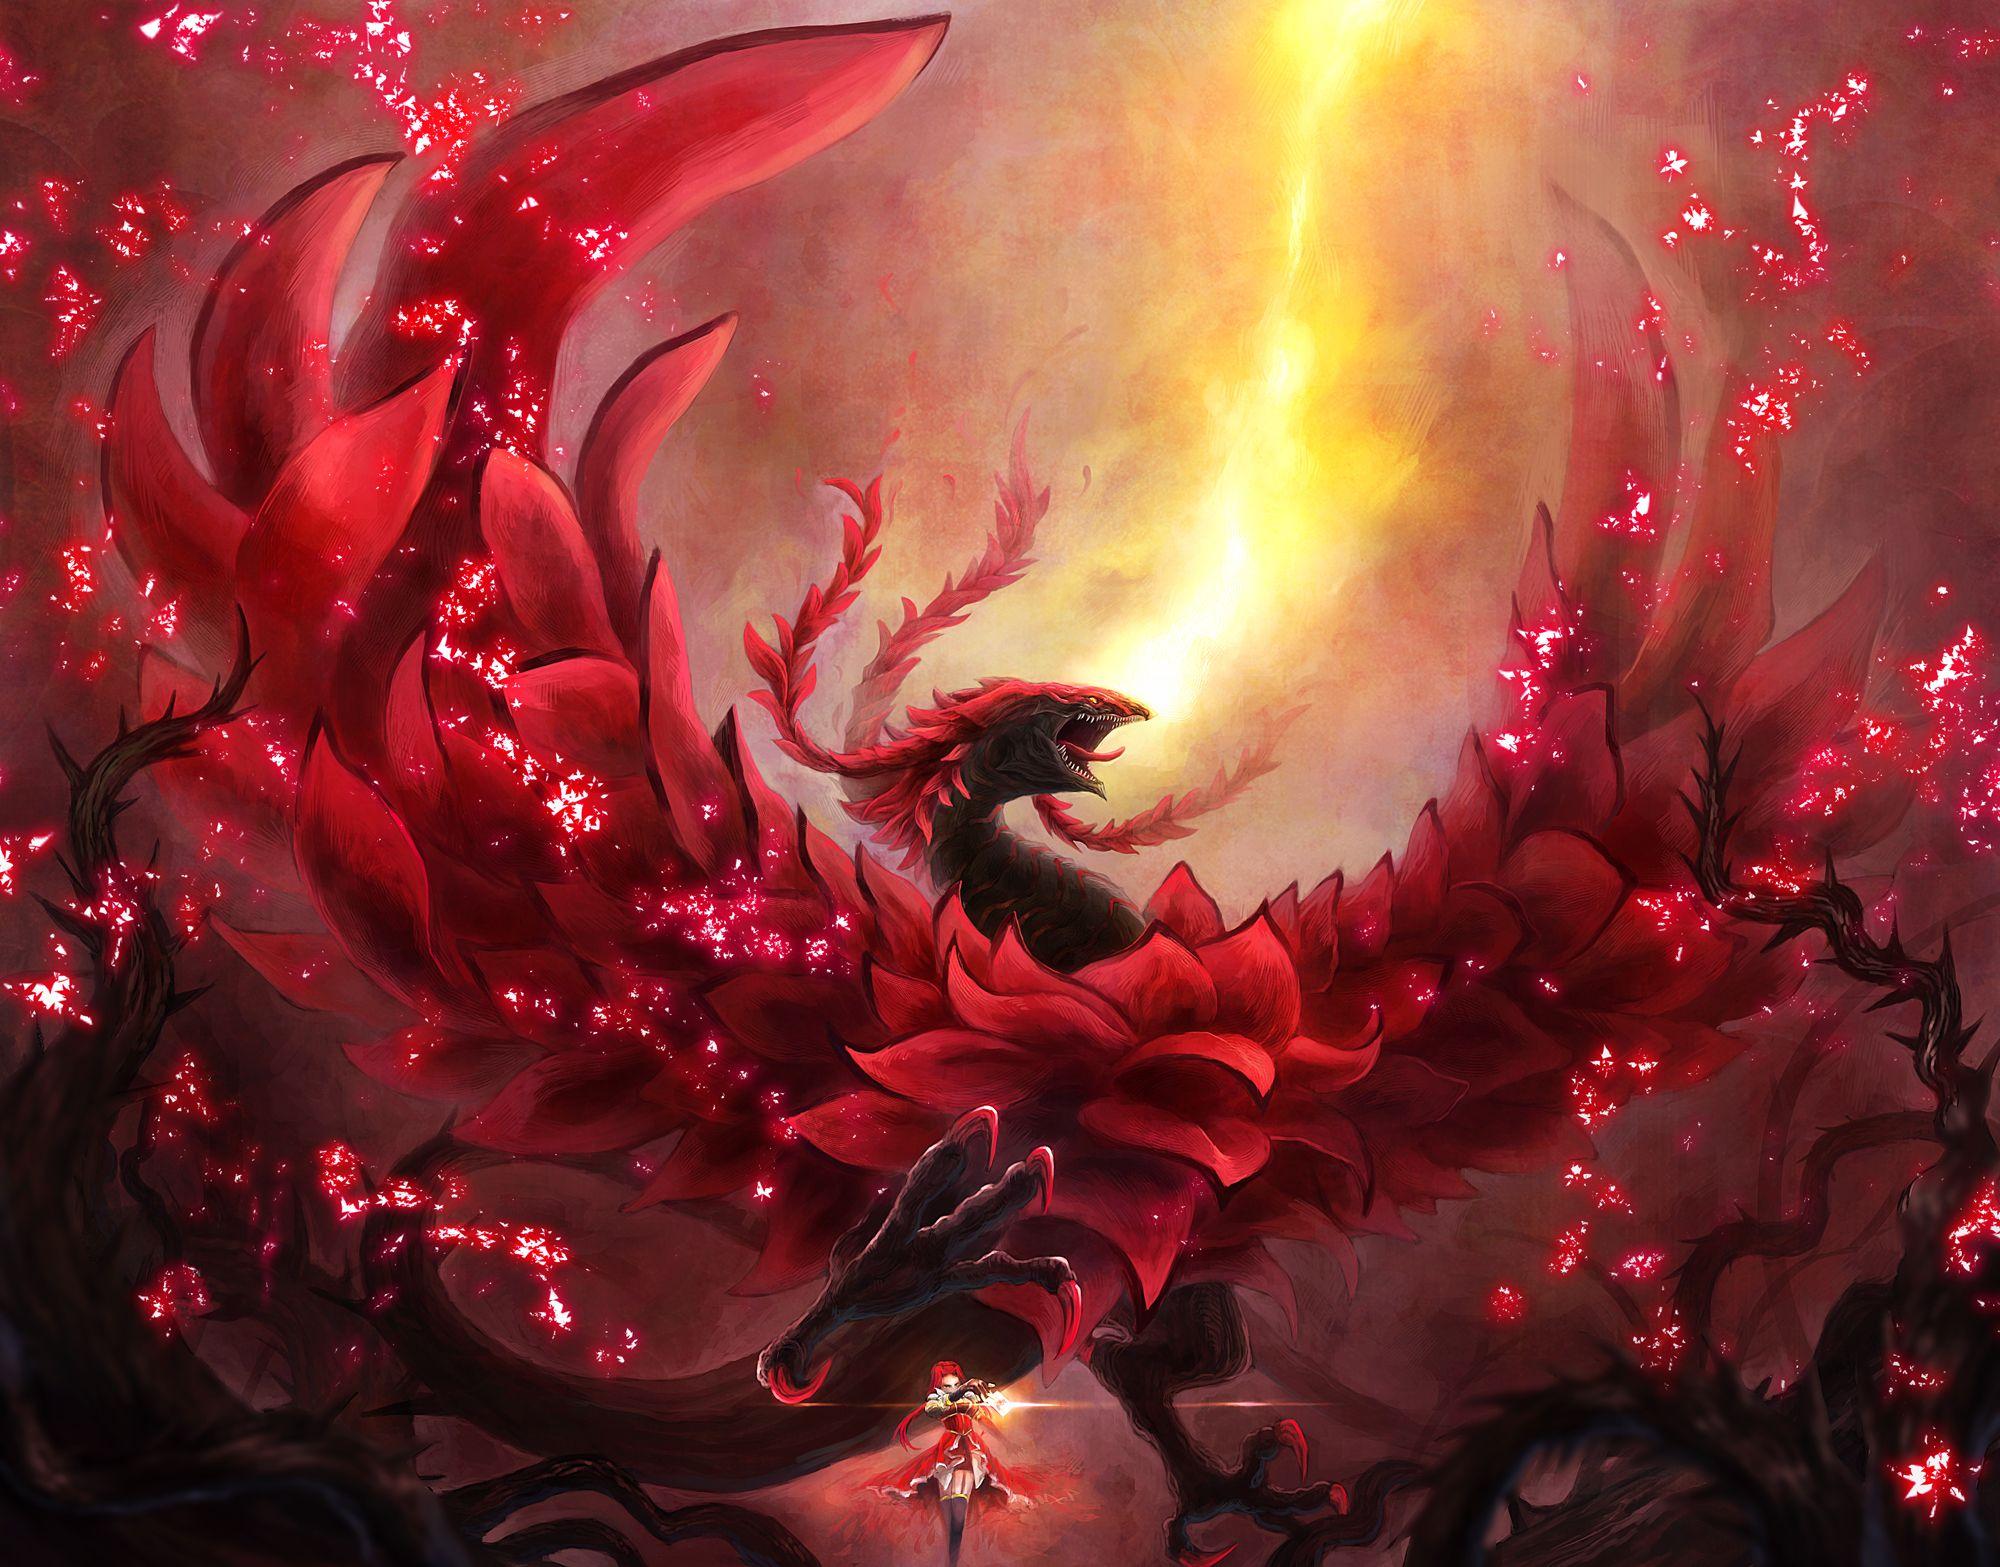 Black Rose Dragon. Akiza- The Black Rose